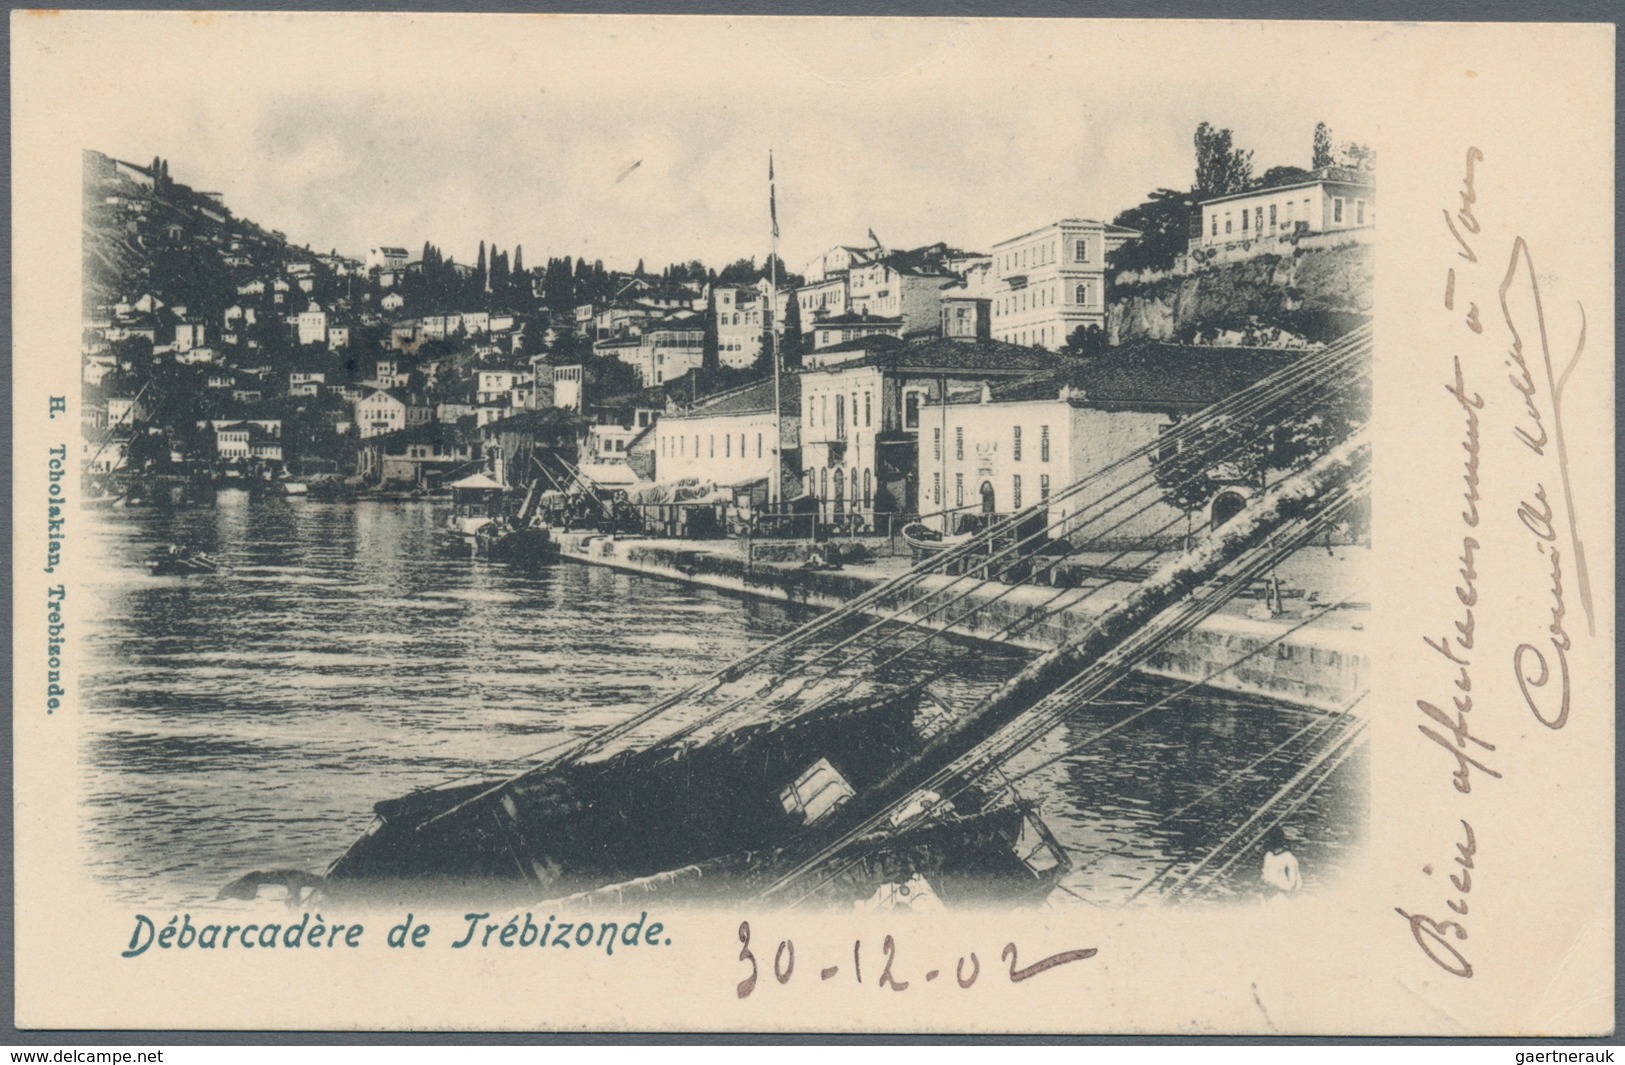 Französische Post in der Levante: 1902, Trebizonde (Trapezunt, Trabzon), three registered ppc (city